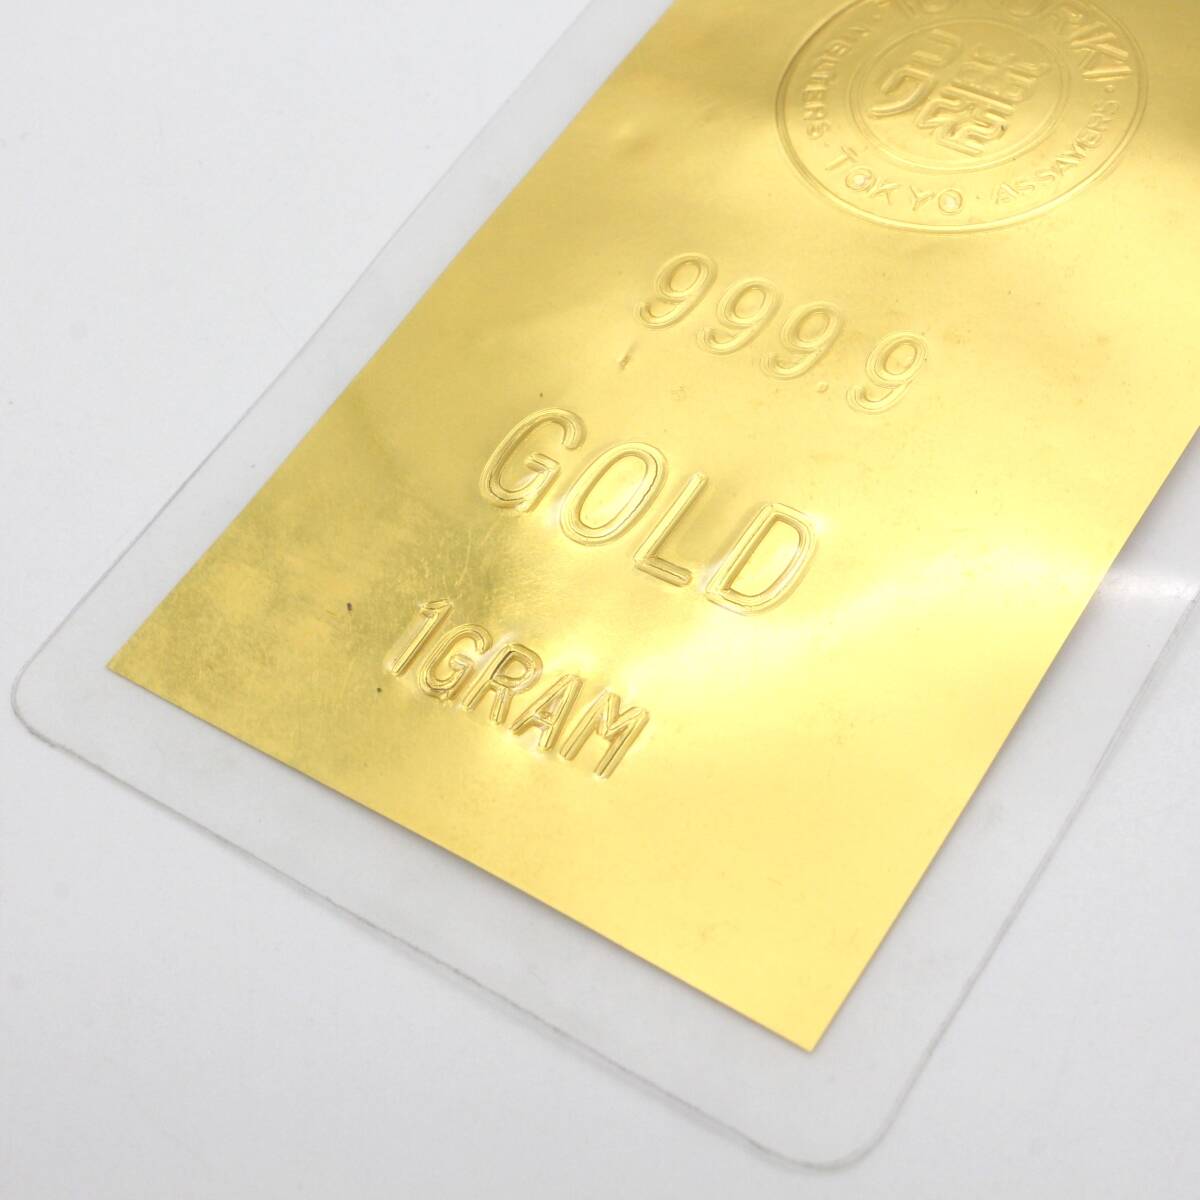 【純金カード】 徳力 TOKURIKI 1g 999.9 ラミネート GOLD ゴールド 24金 K24 総重量2.6g の画像5